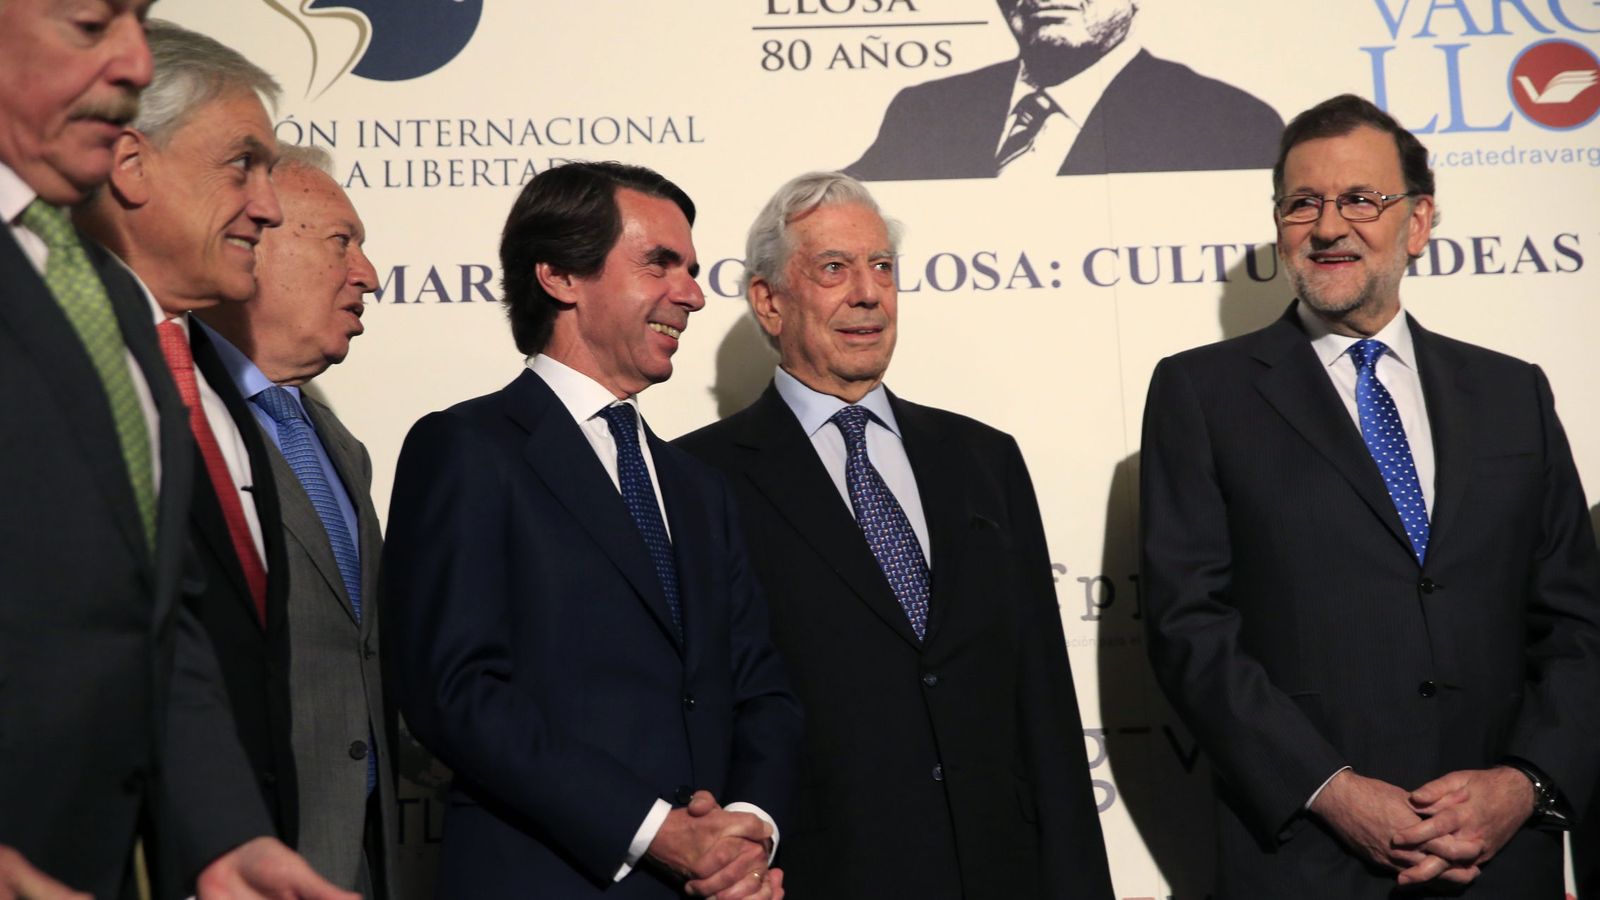 Foto: José María Aznar, Mario Vargas Llosa y Mariano Rajoy con José Manuel García-Margallo y los expresidentes Andrés Pastrana y Sebastián Piñera. (EFE)